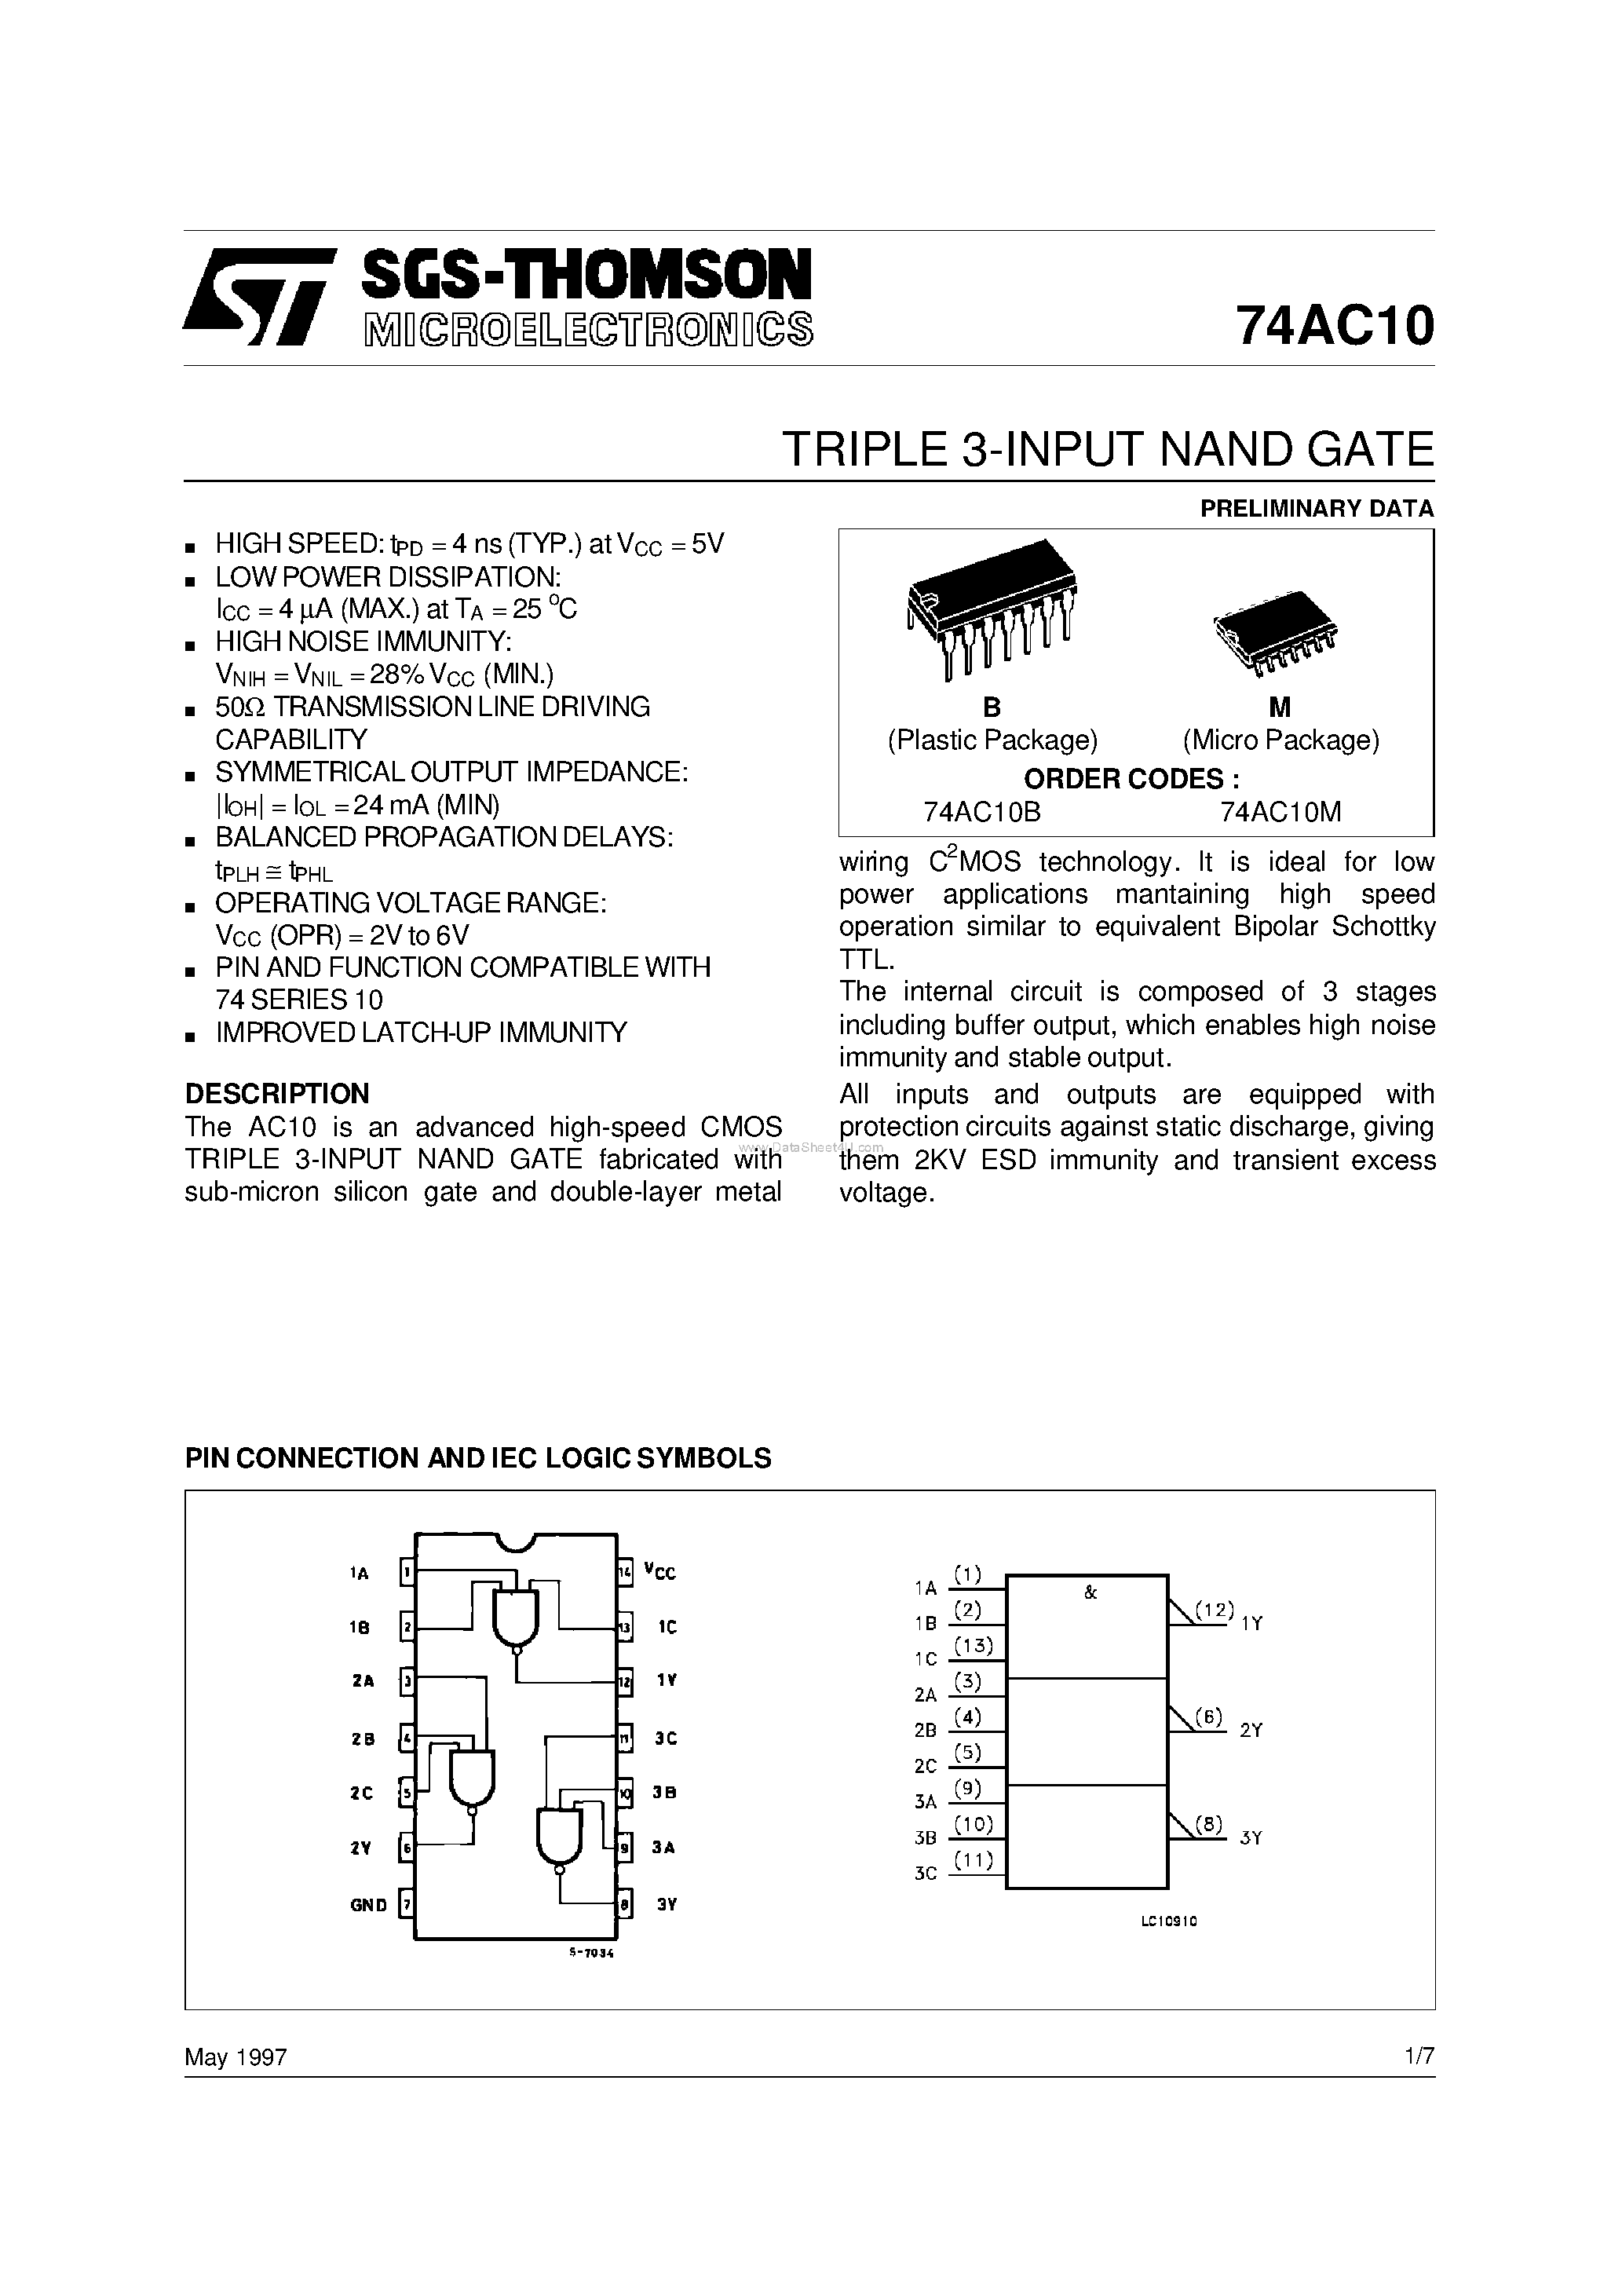 Даташит 74AC10M - TRIPLE 3-INPUT NAND GATE страница 1